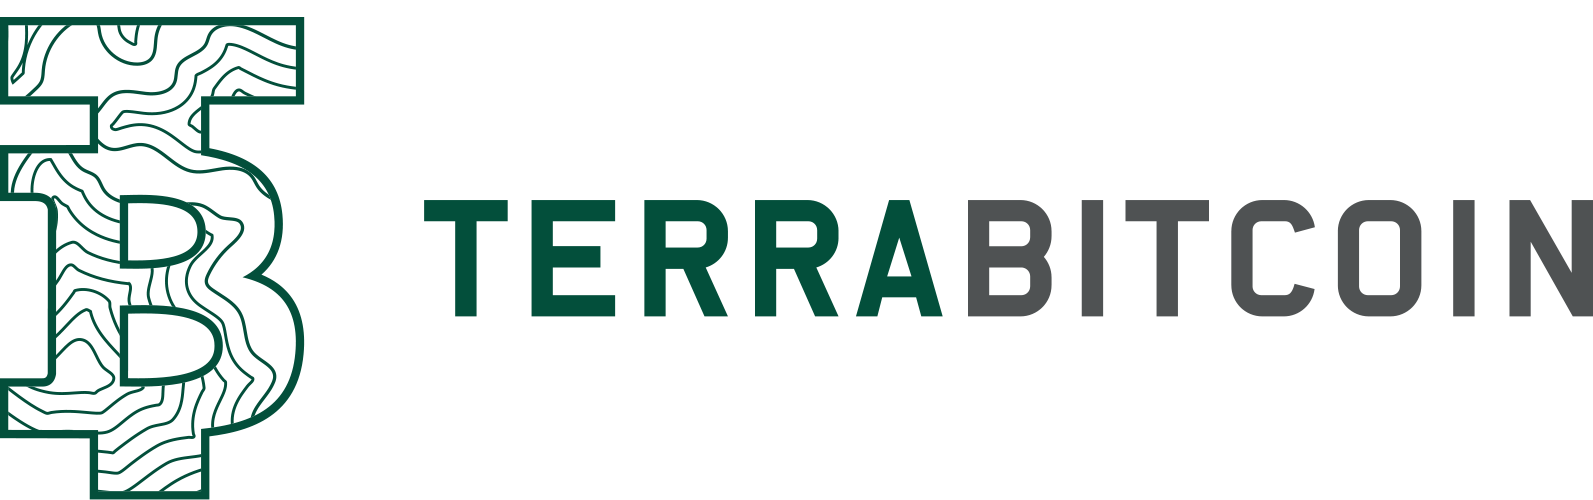 TerraBitcoin logo DEF 3 500